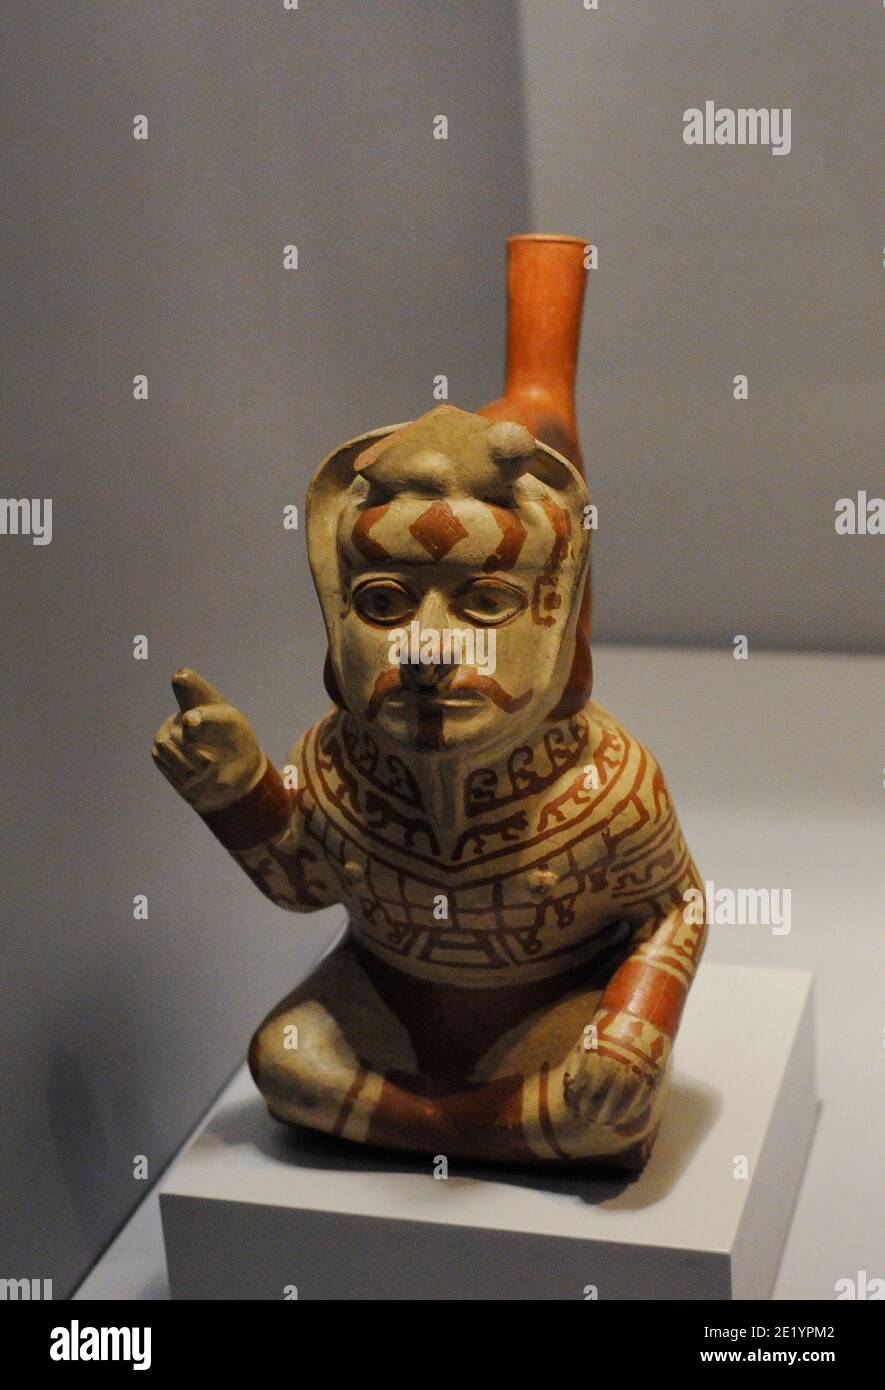 Gefäß, das einen Häuptling in einer Haltung des Kommandos darstellt. Keramik. Moche-Kultur (100 v. Chr.-700 n. Chr.). Peru. Museum of the Americas. Madrid, Spanien. Stockfoto